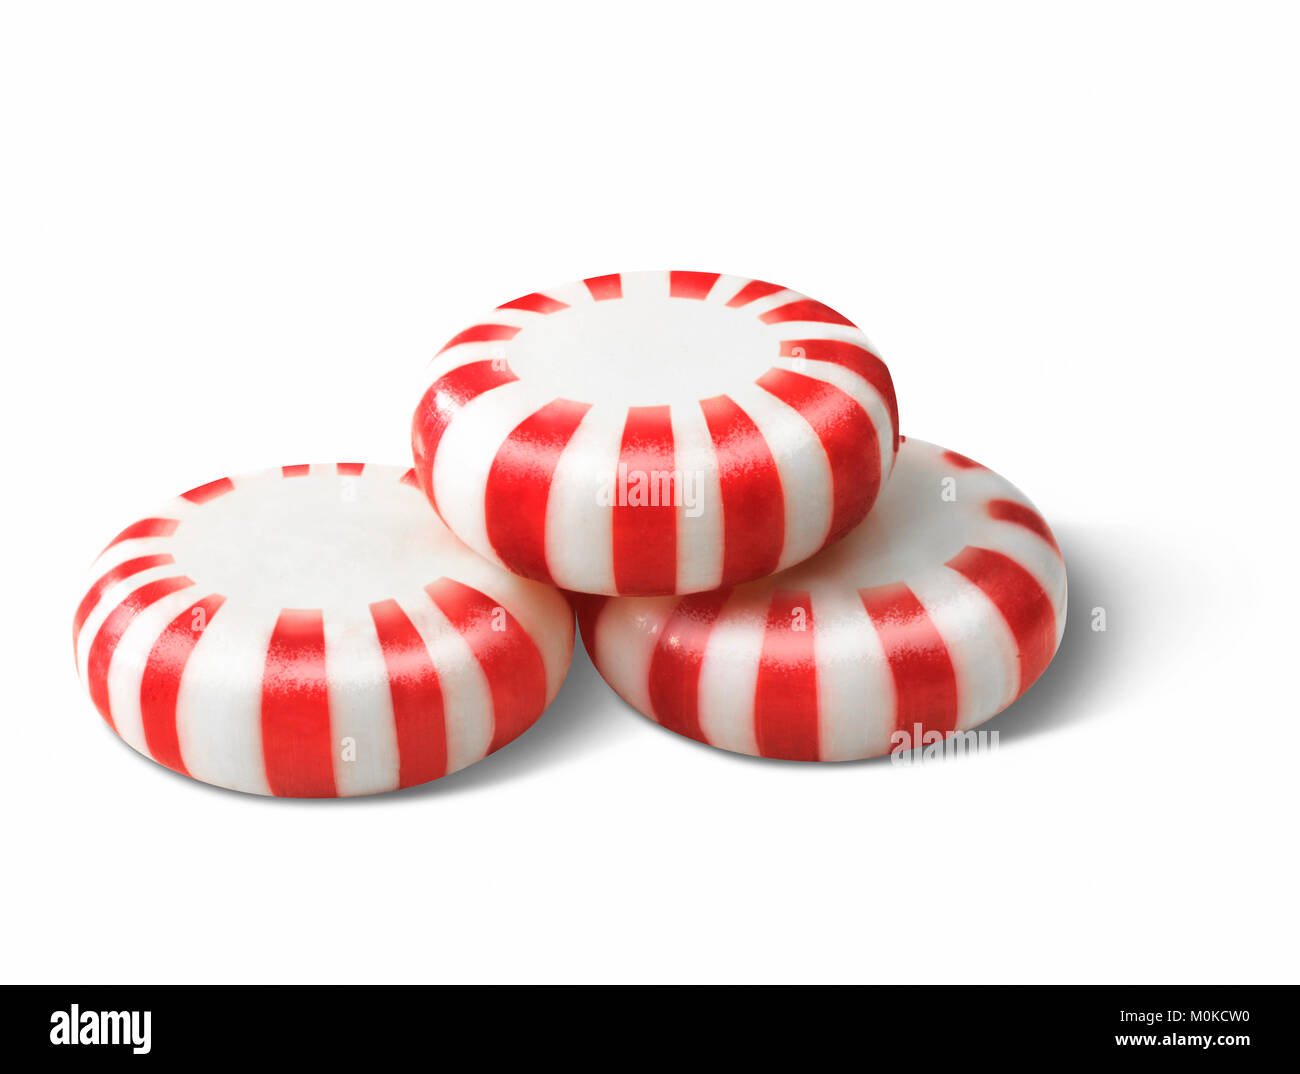 Drei rot-weiß gestreiften Pfefferminz Bonbons auf weißem Hintergrund  Stockfotografie - Alamy